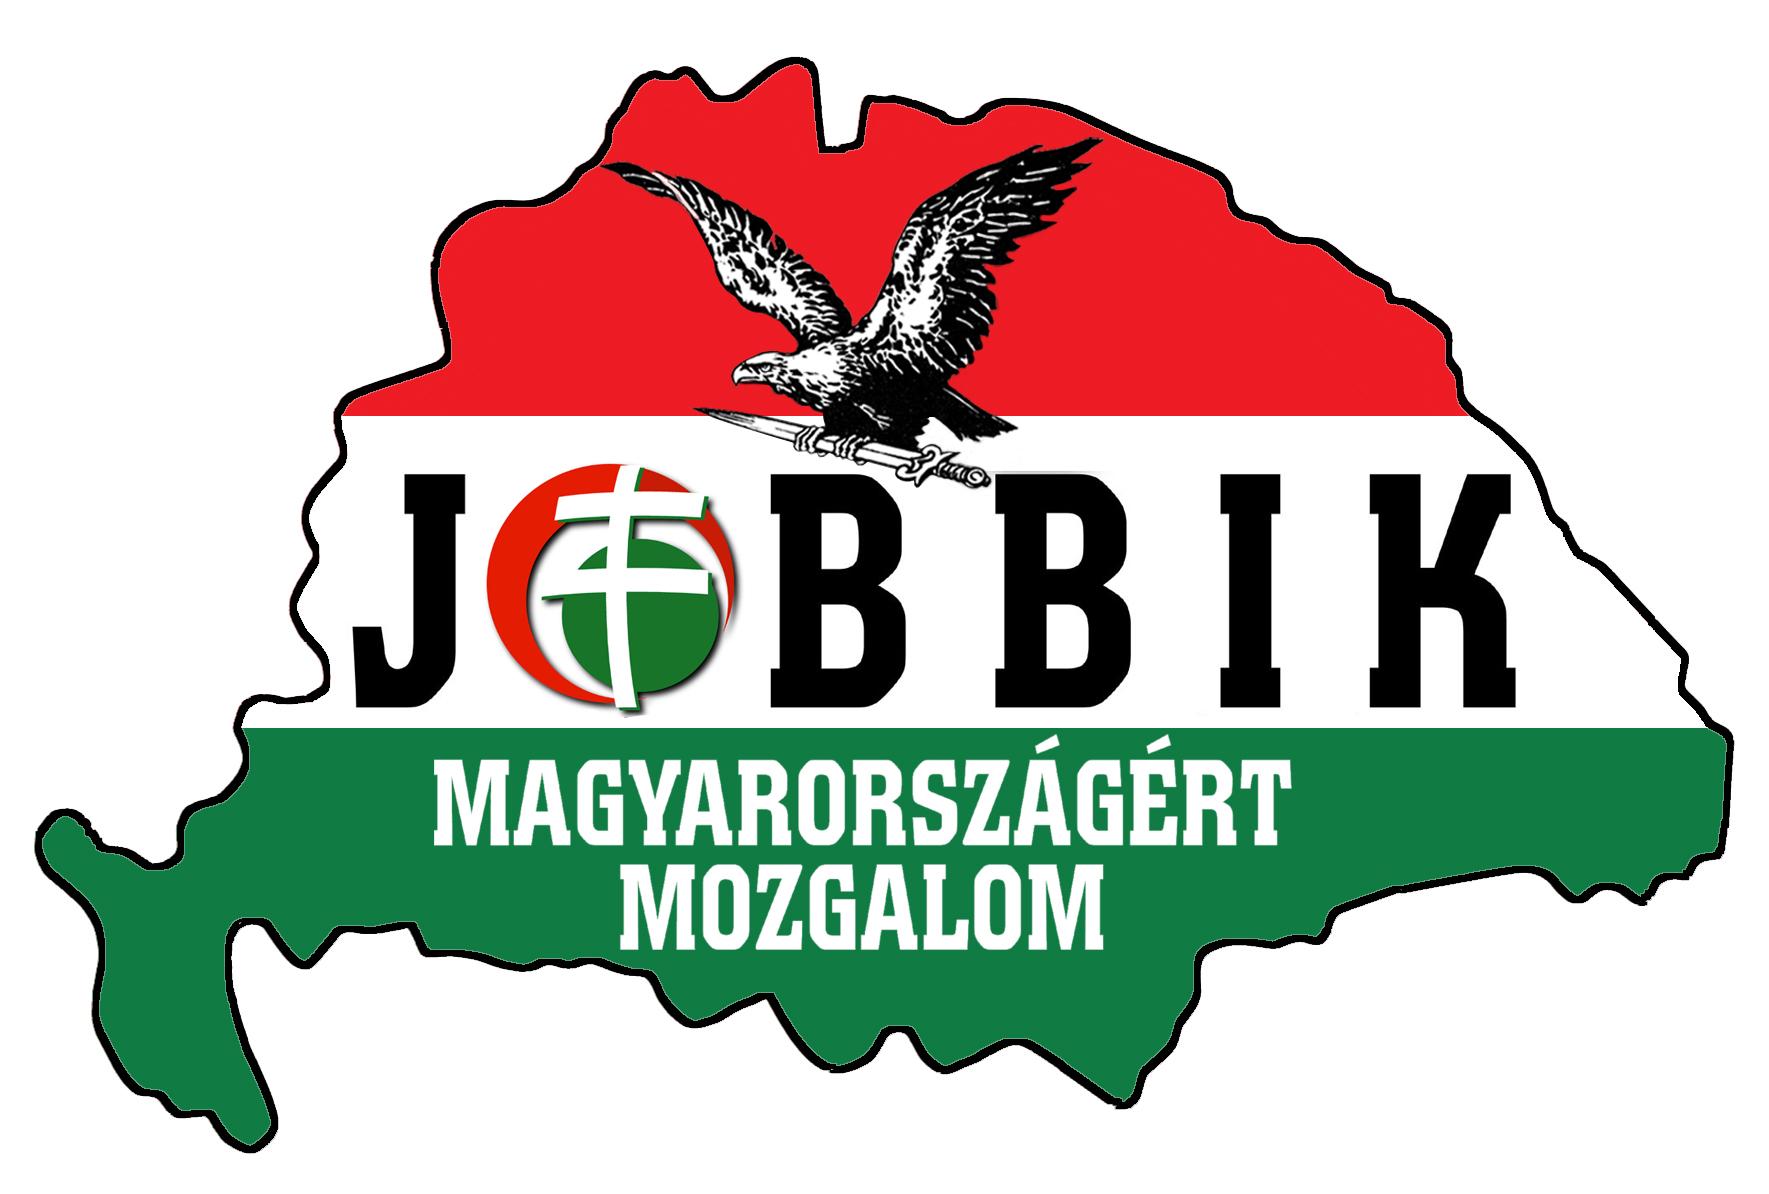 Október 23. - Véget ért a Jobbik demonstrációja a Vértanúk terén, átmennek a Deák térre